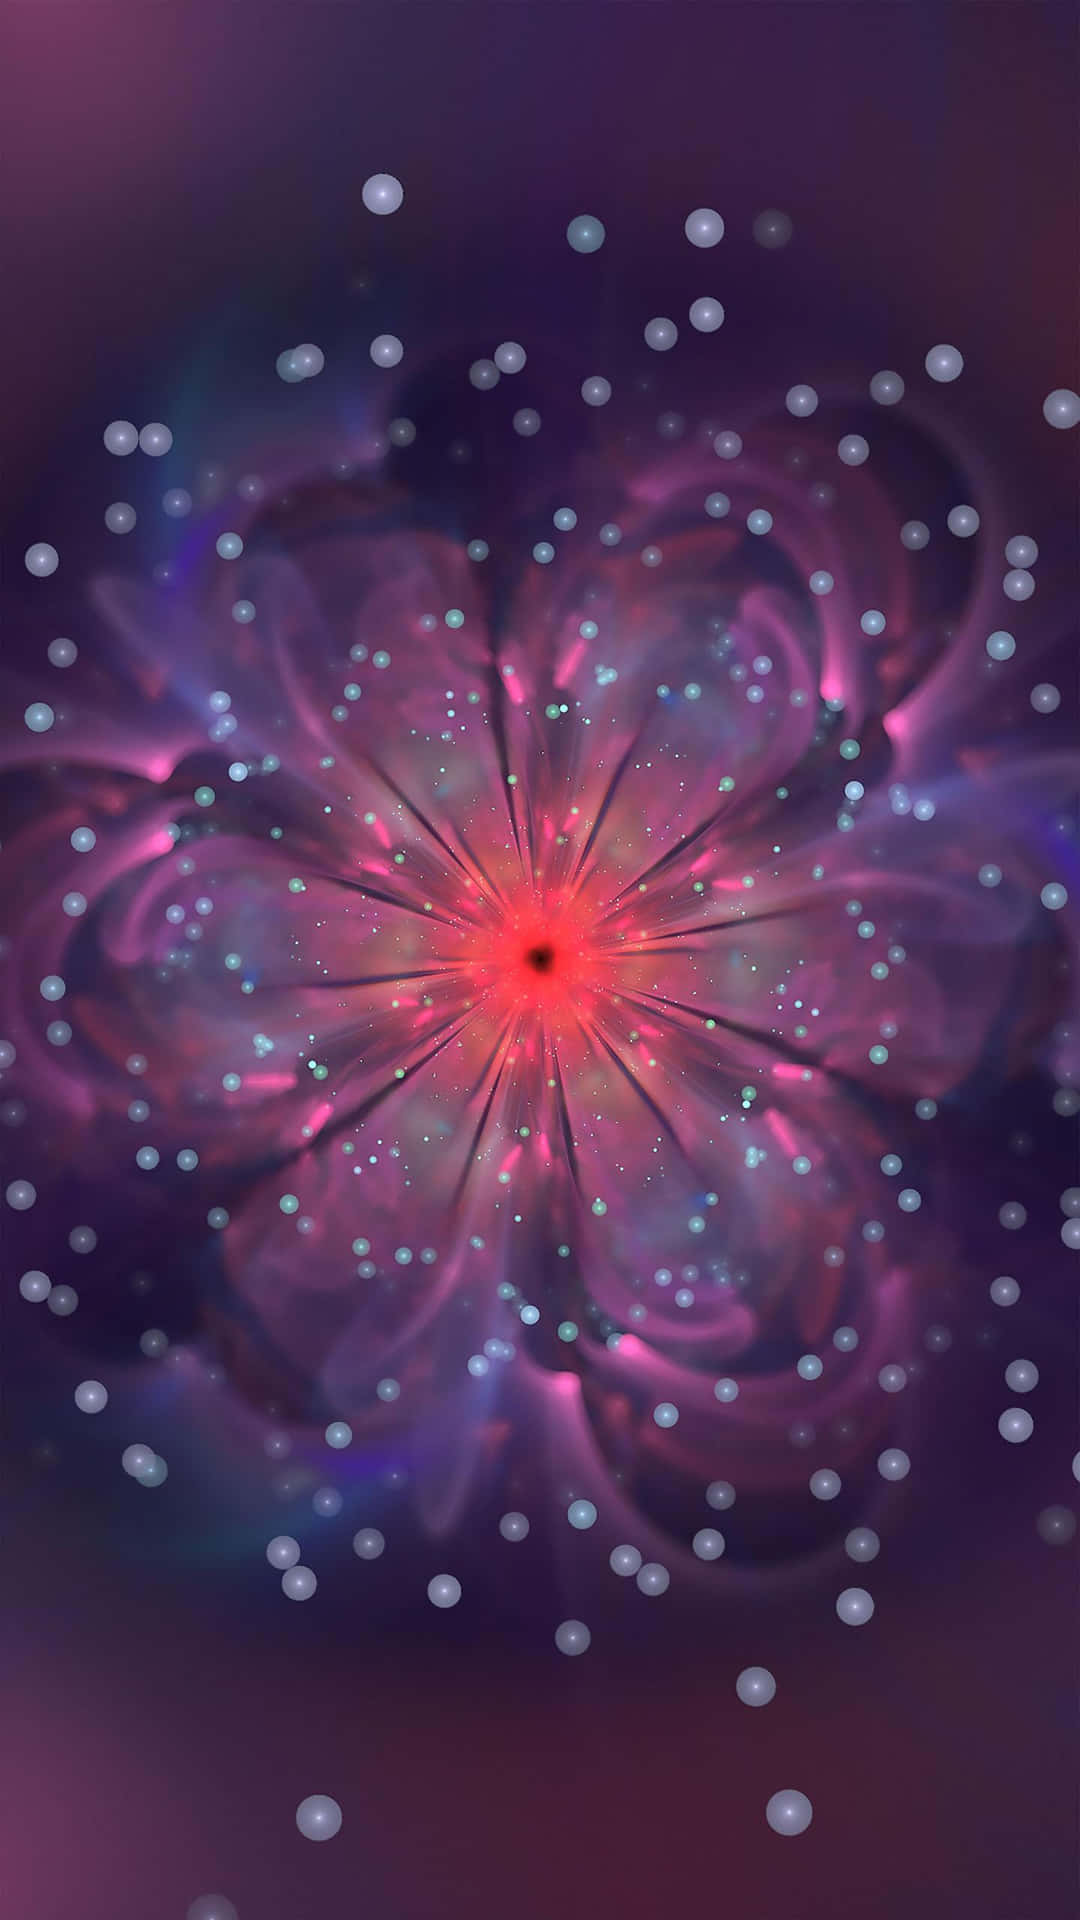 Einelila Blume Mit Einem Stern In Der Mitte. Wallpaper